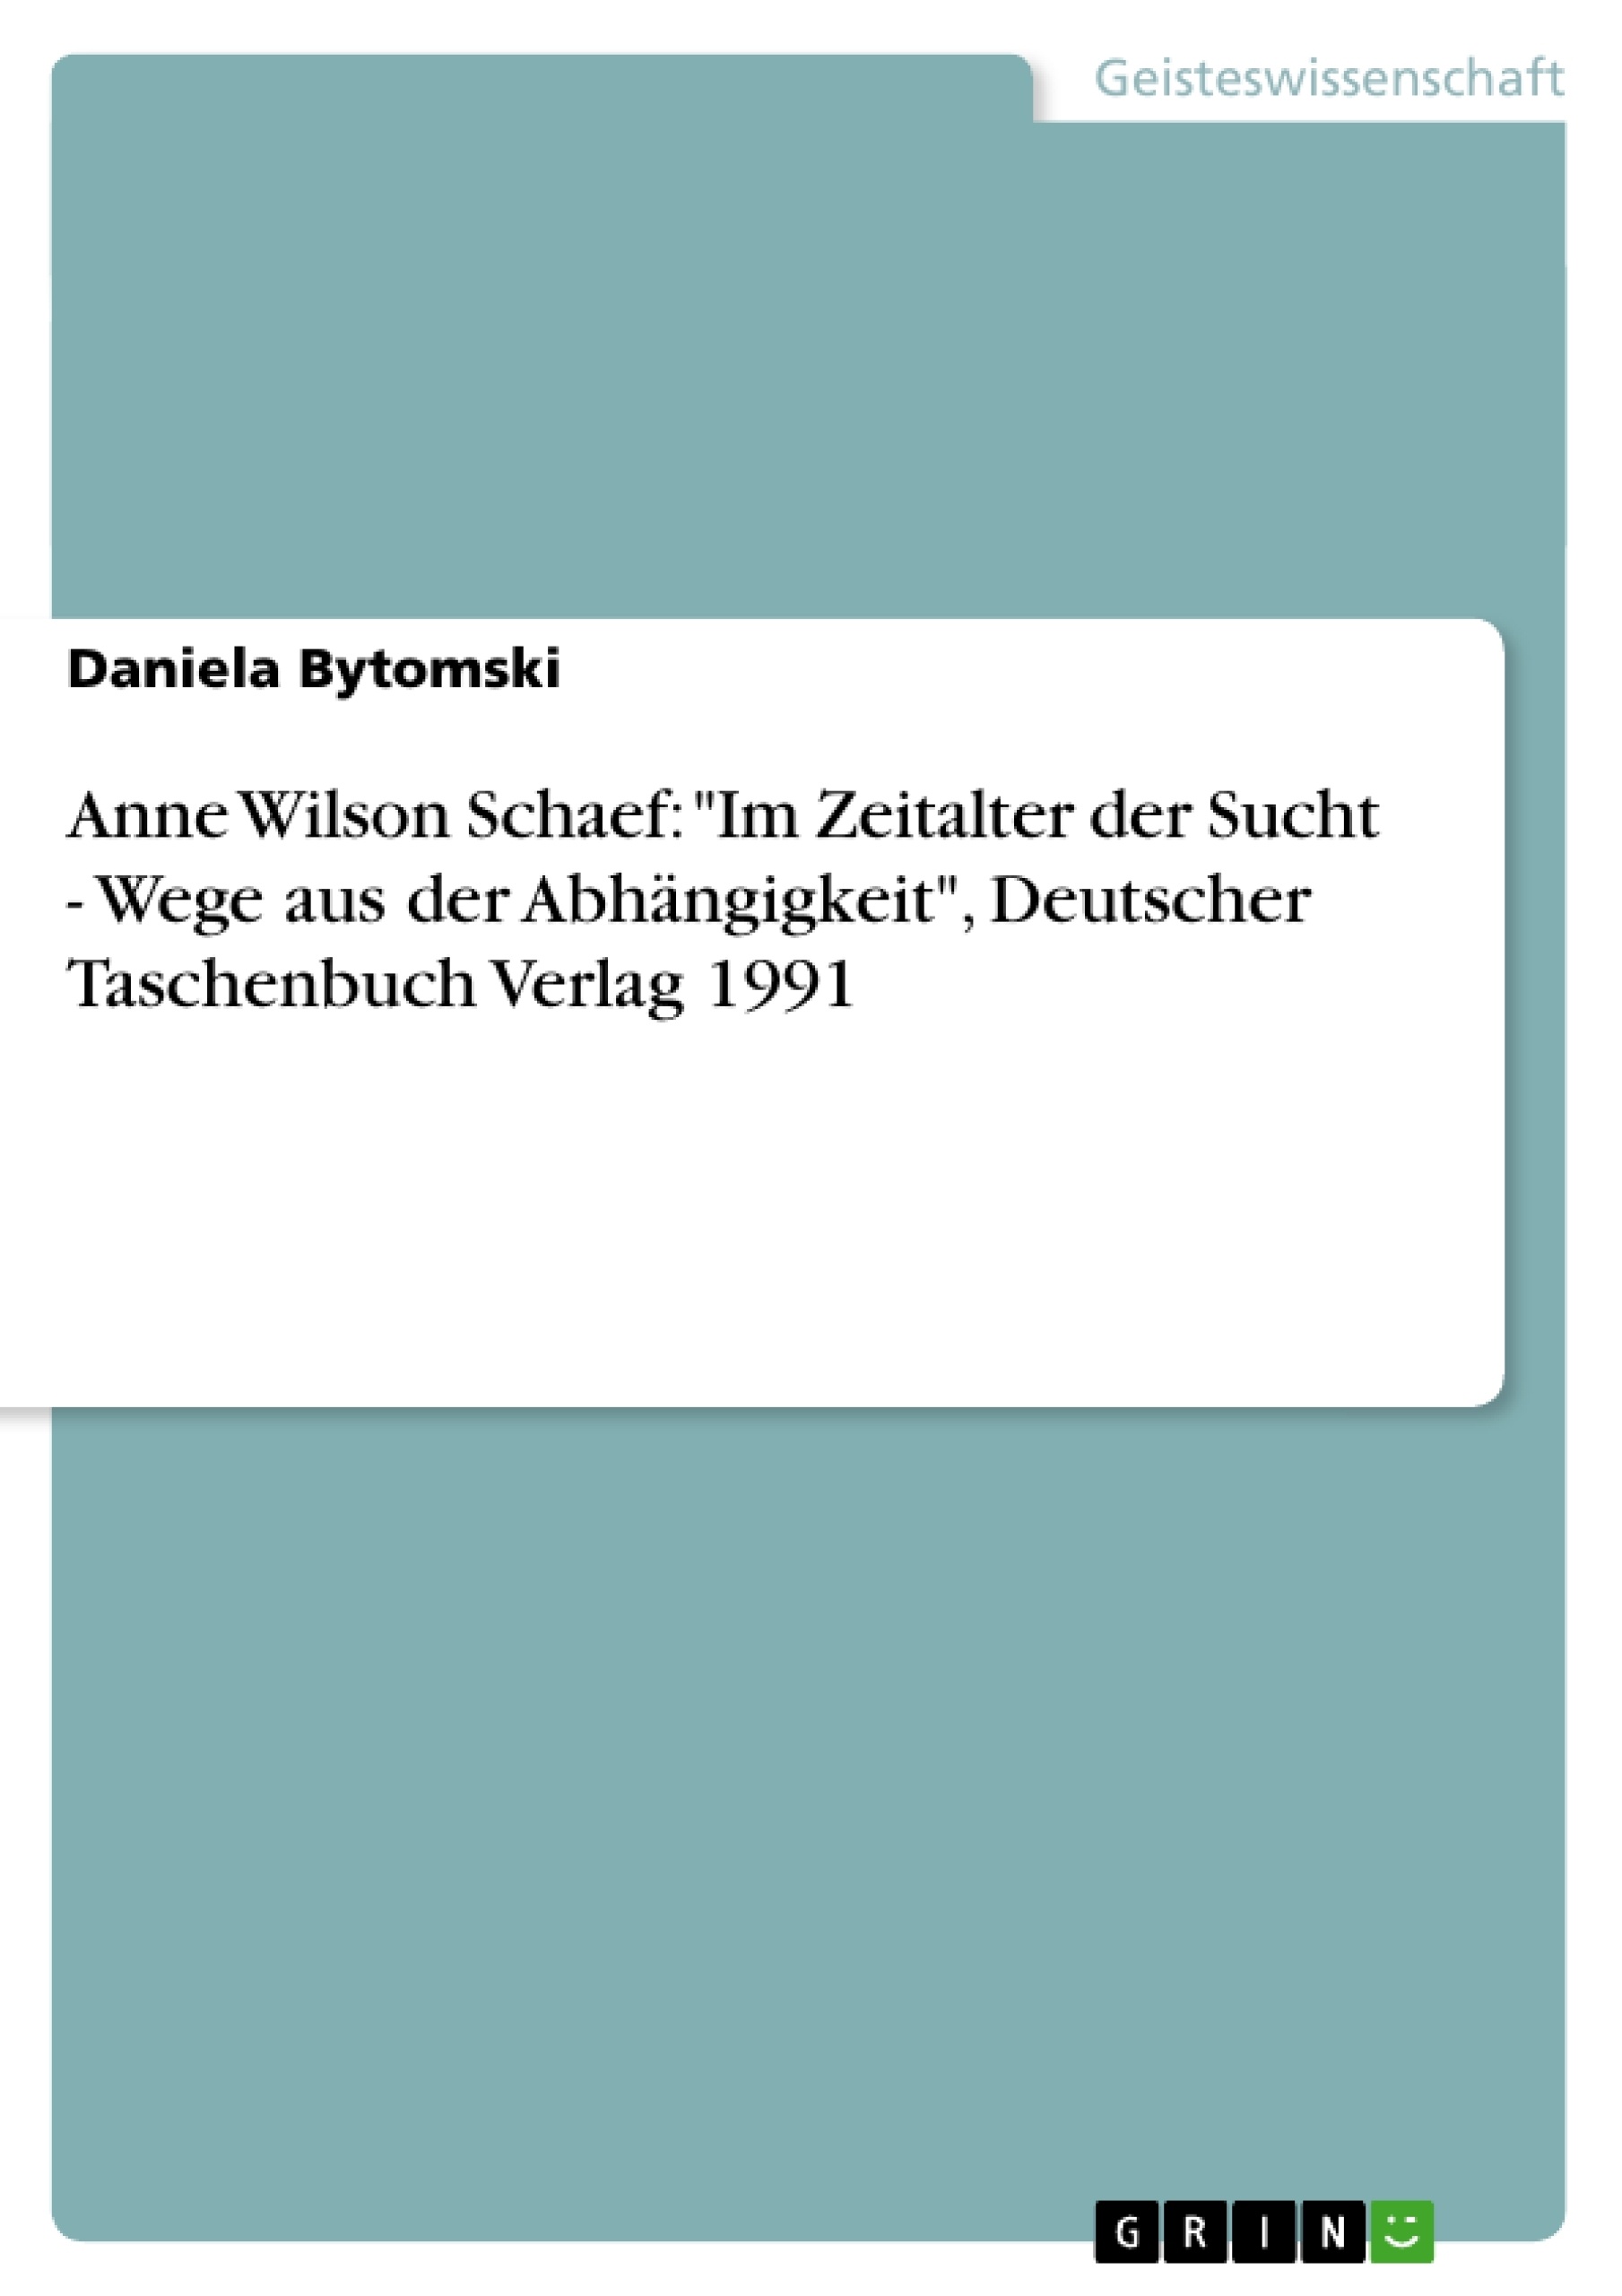 Titre: Anne Wilson Schaef: "Im Zeitalter der Sucht - Wege aus der Abhängigkeit", Deutscher Taschenbuch Verlag 1991